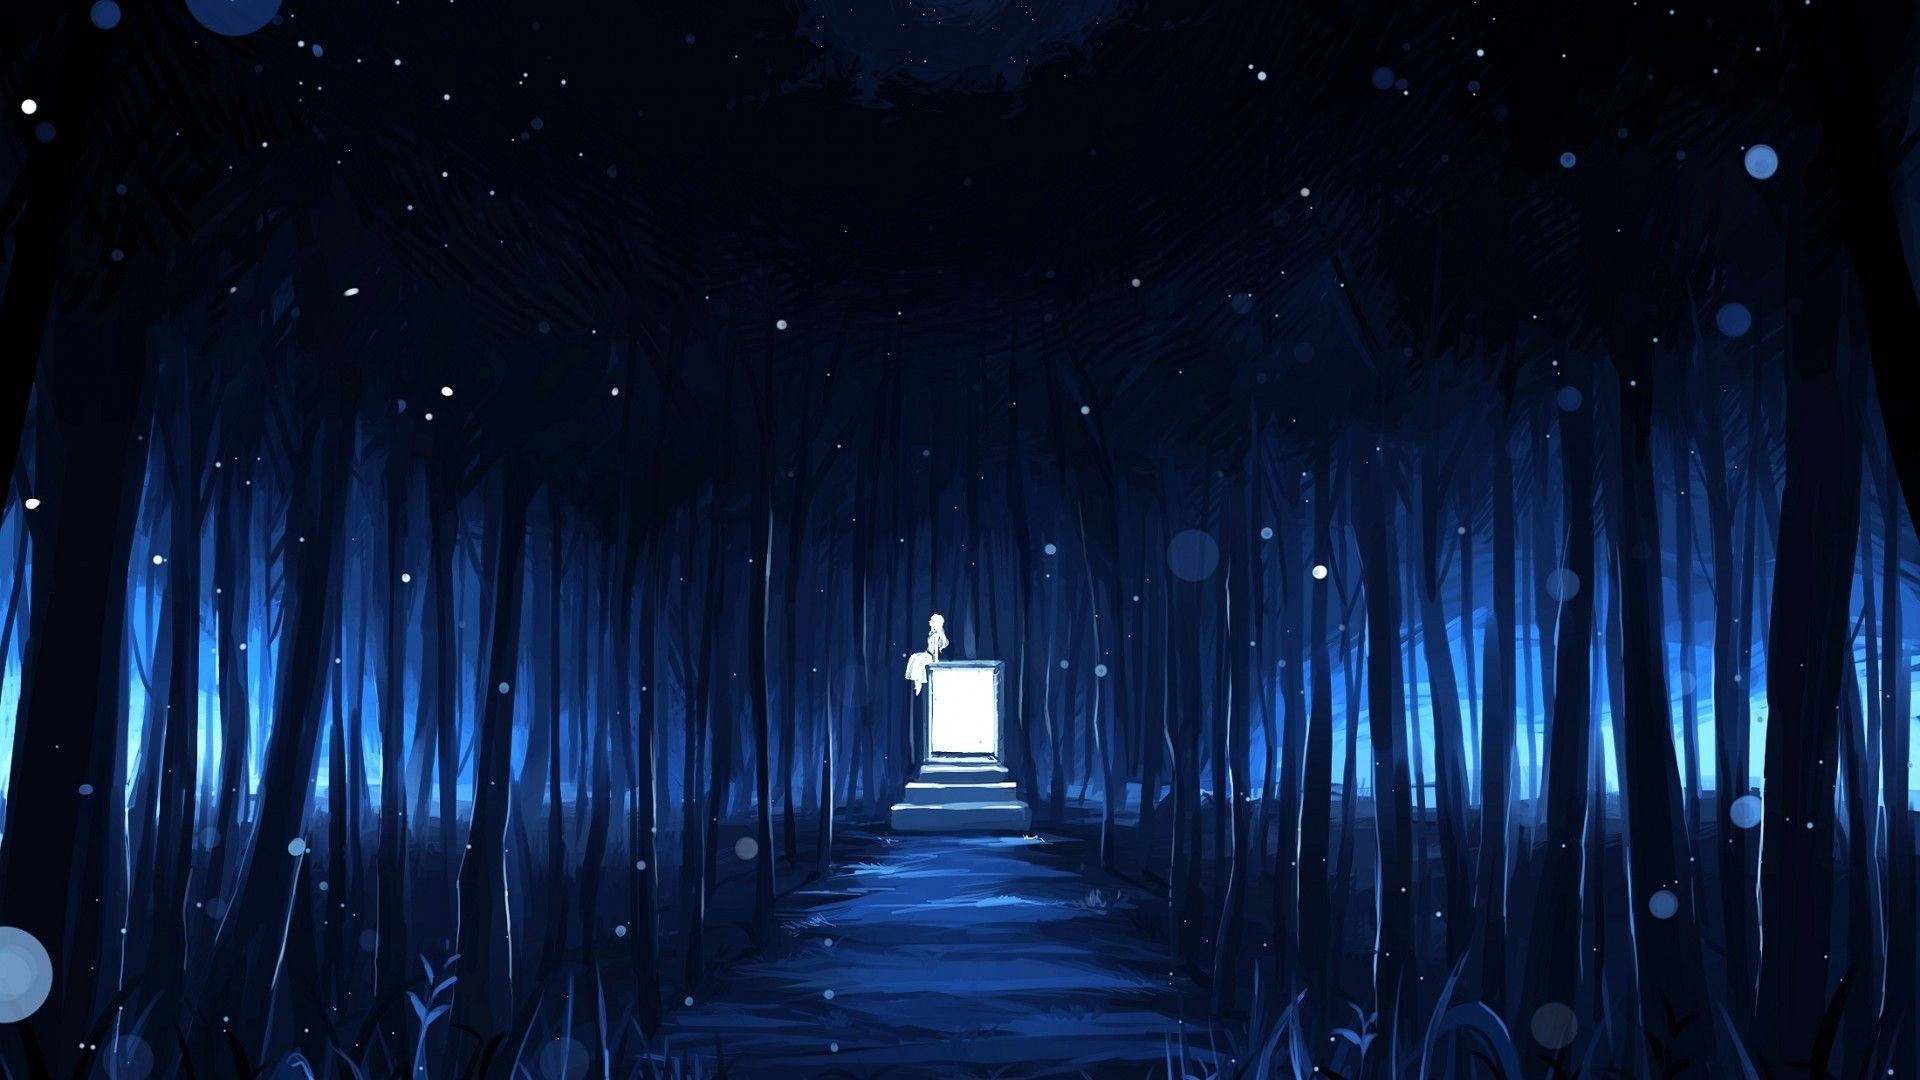 Anime Landscape Phone Wallpapers - Top Những Hình Ảnh Đẹp